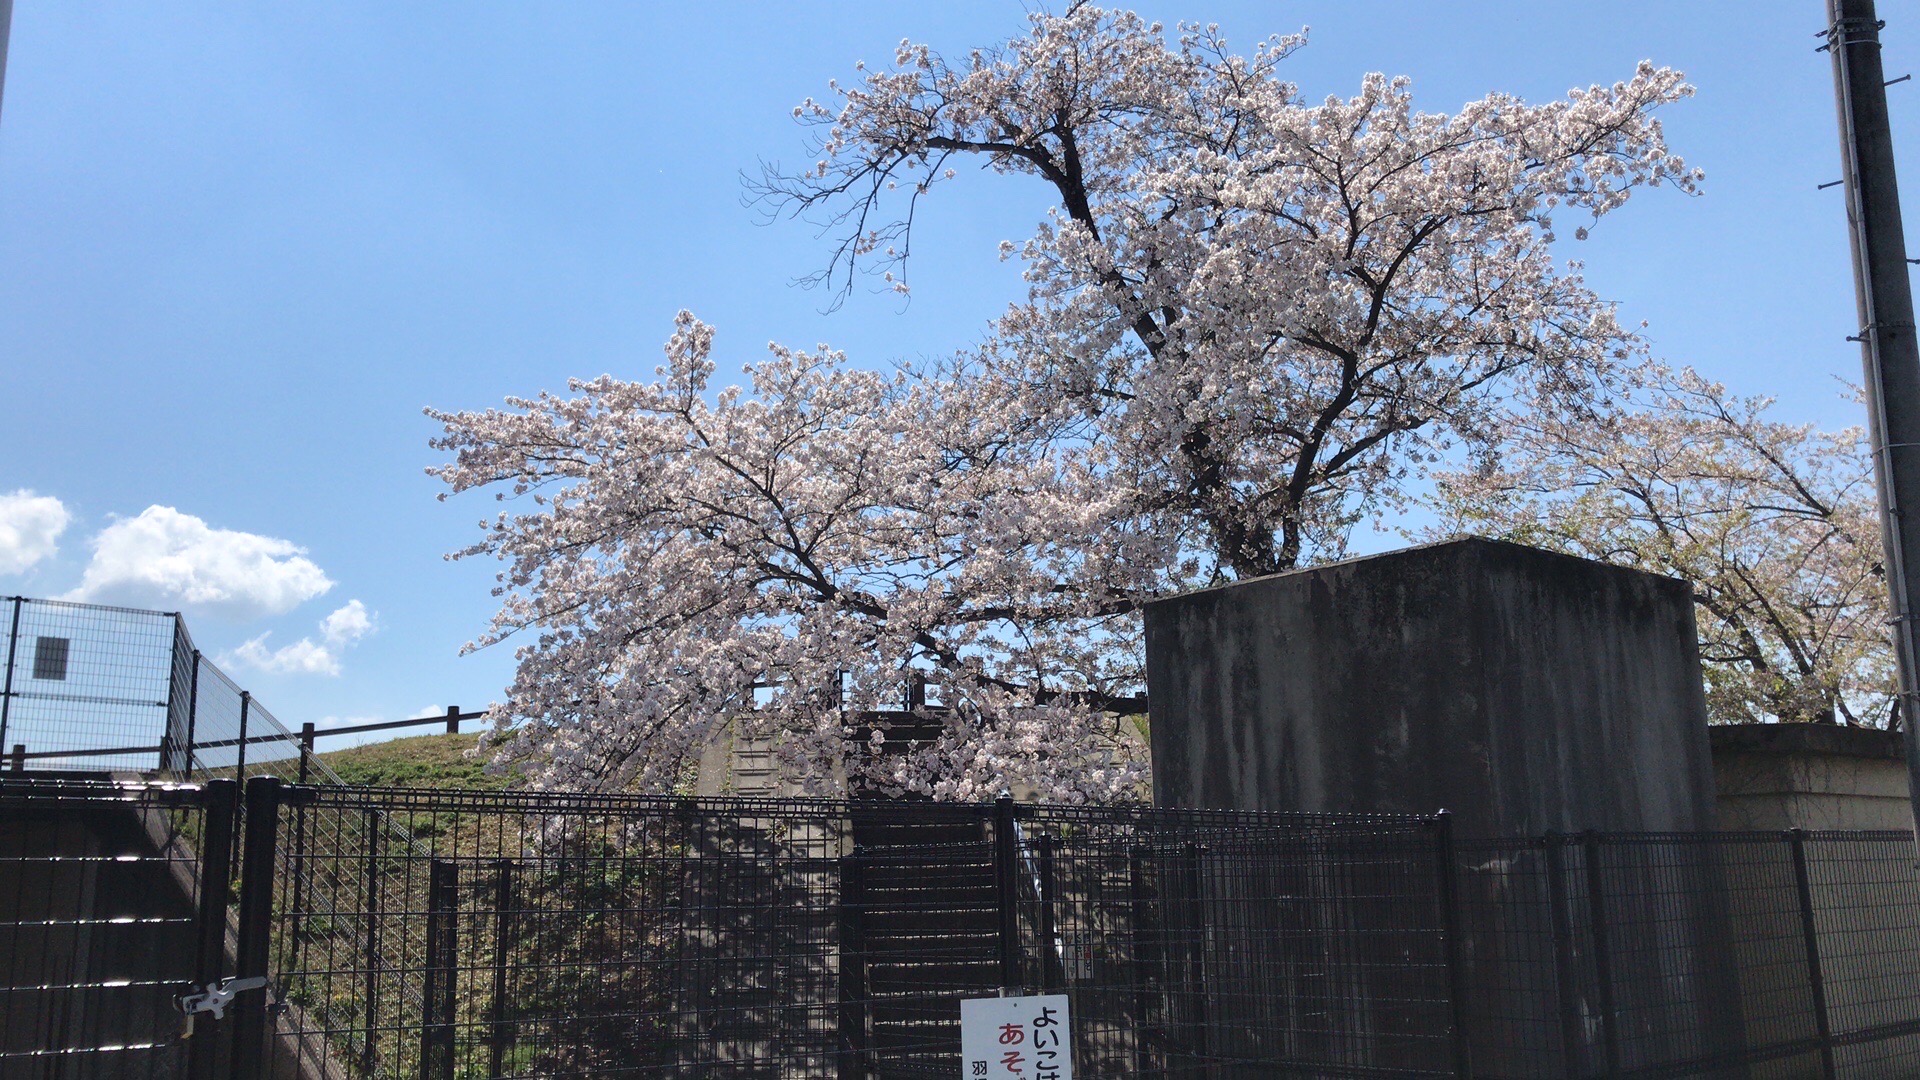 又快到了樱花季，家附近的公园很多樱花树蛮好看的。